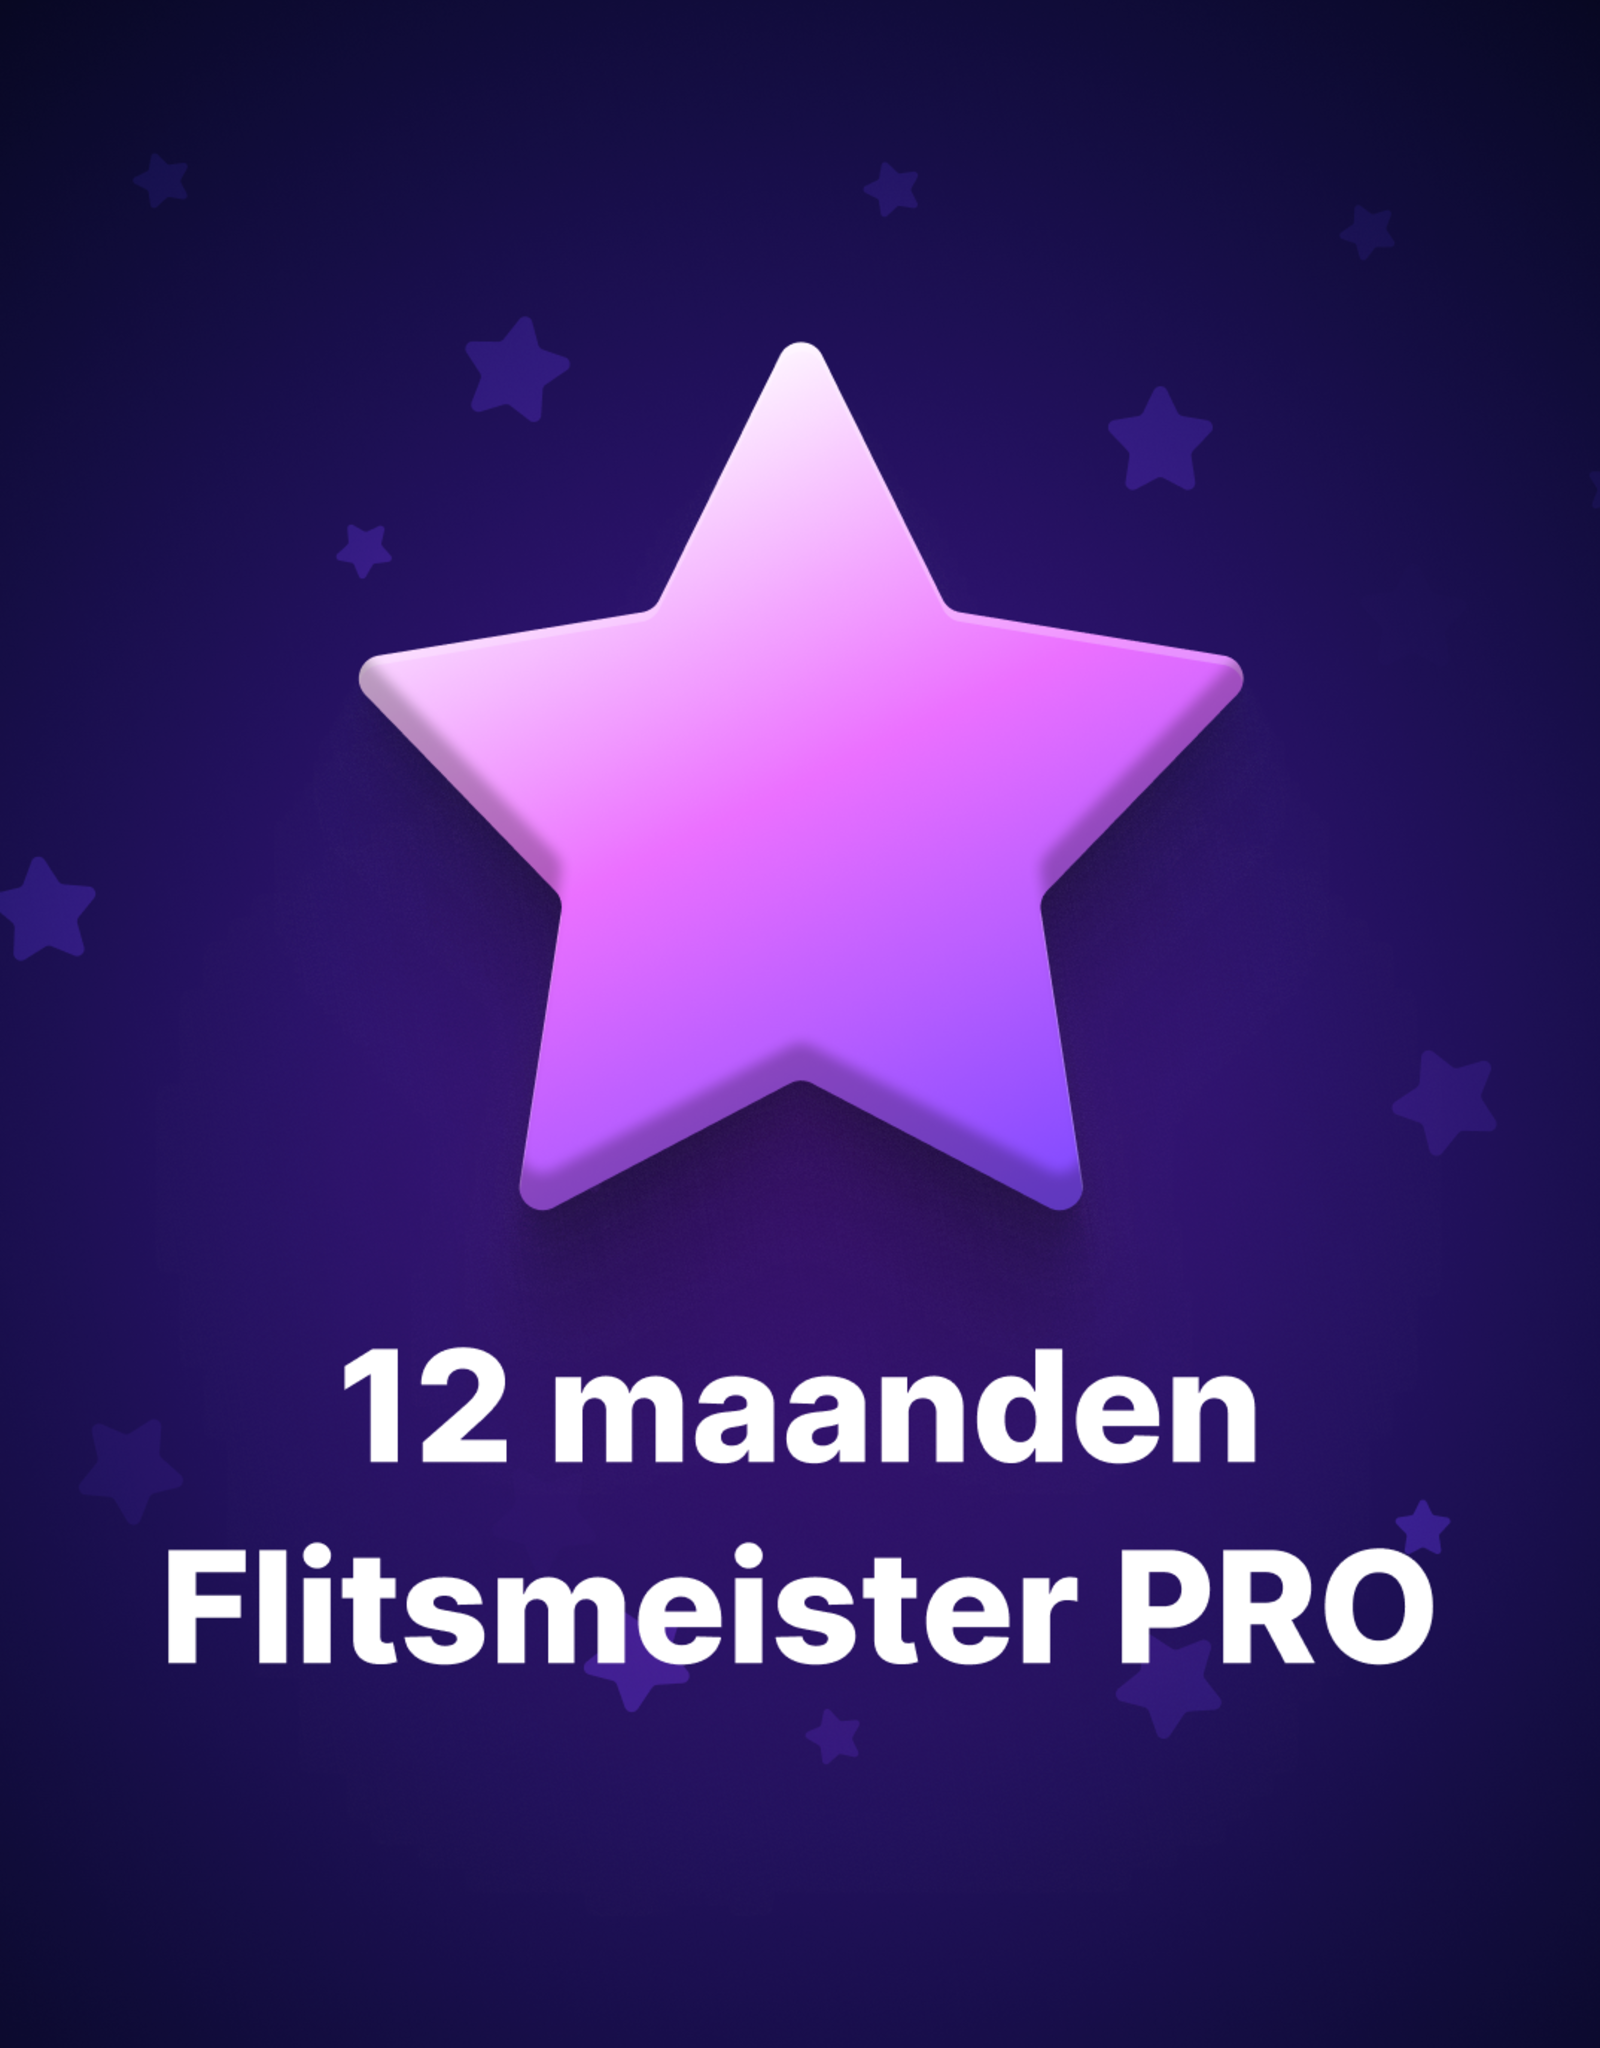 Flitsmeister Flitsmeister PRO cadeaukaart - 12 maanden